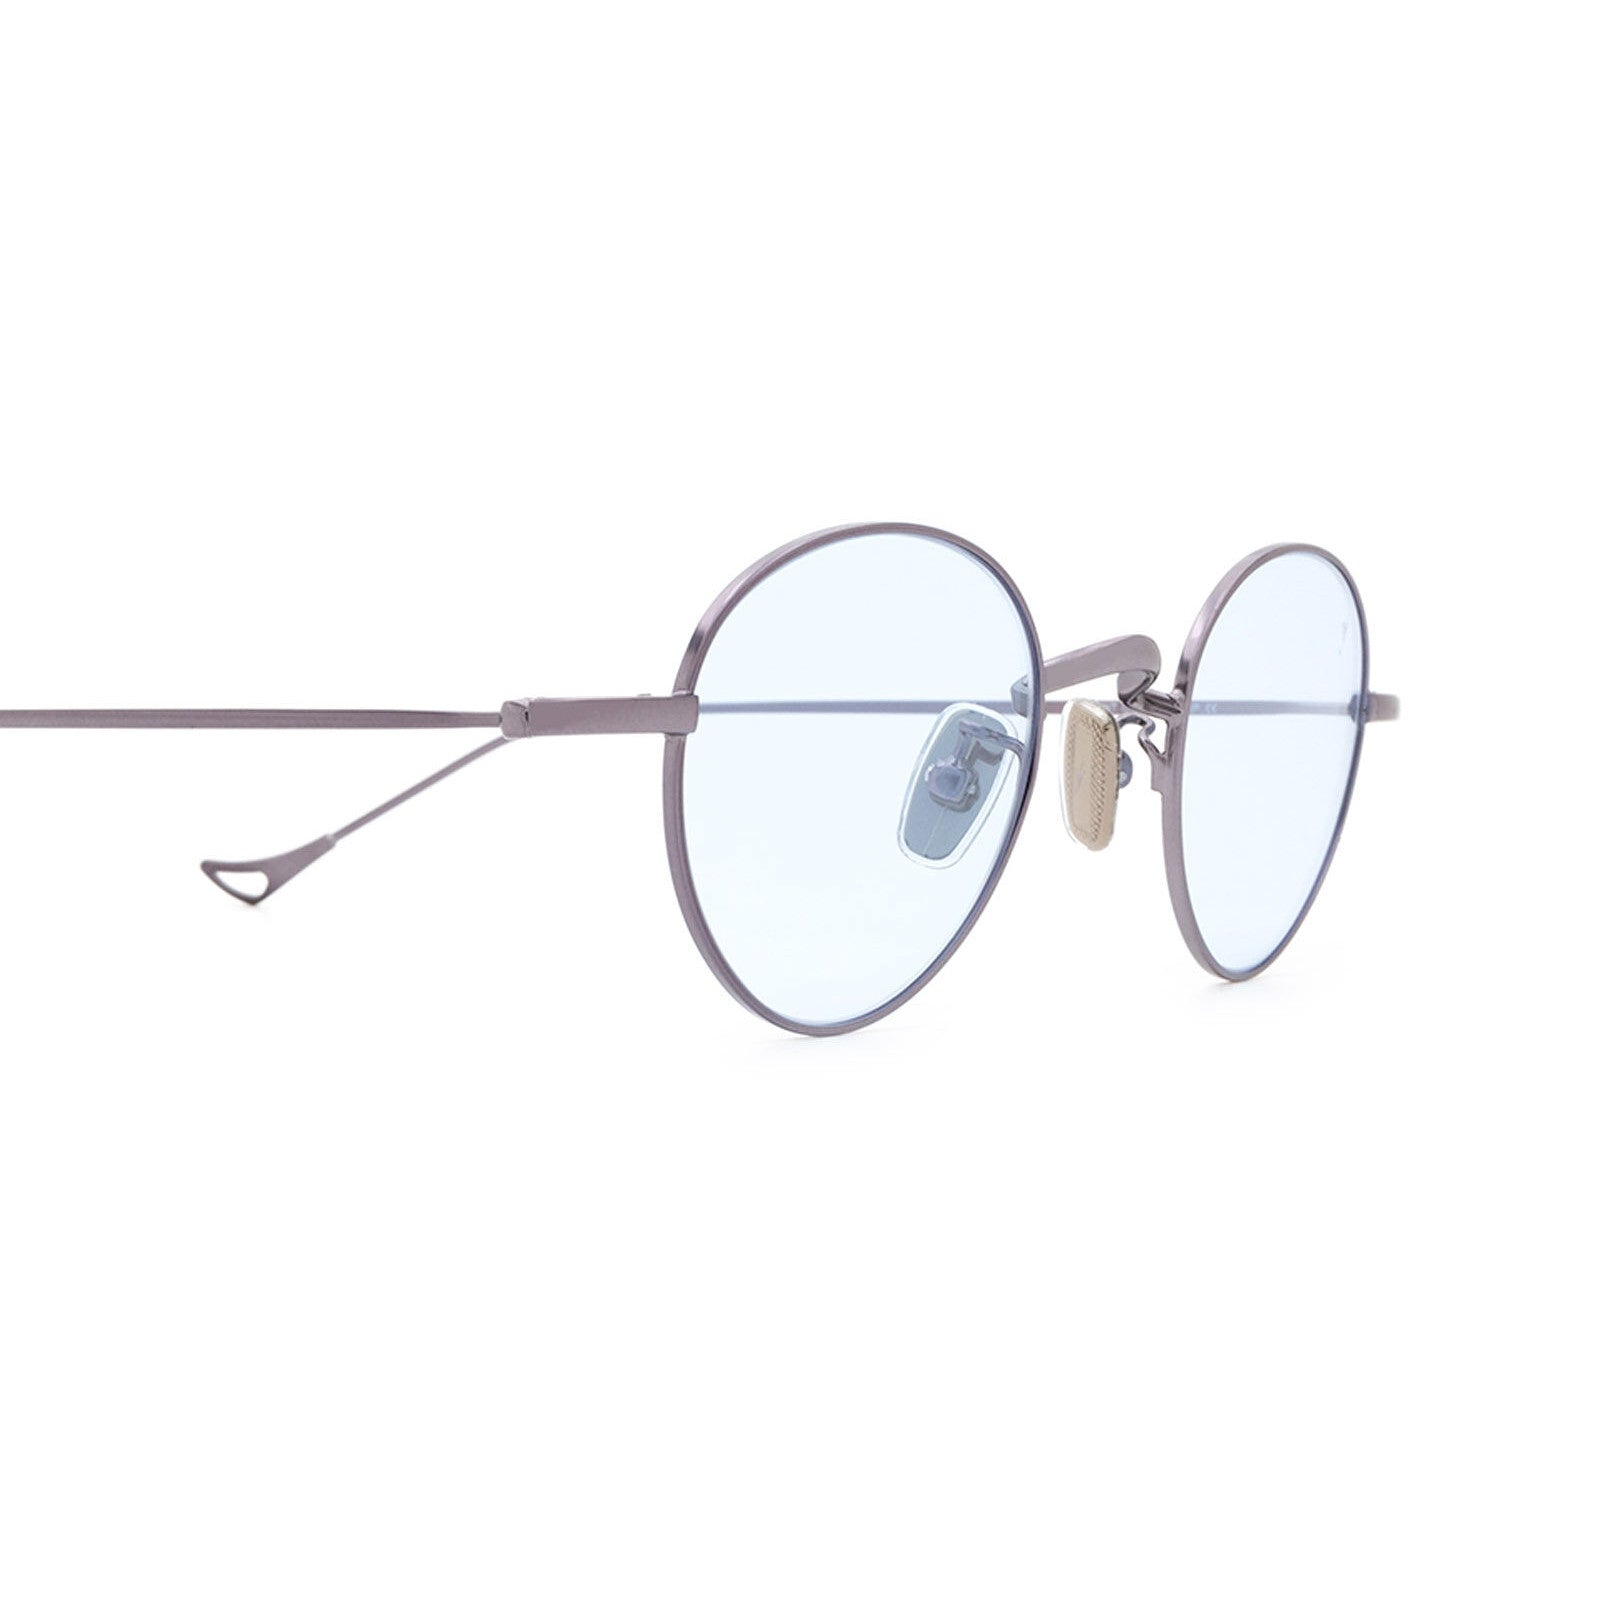 CLIRIS, Le 1er nettoyeur de lunettes high-tech design, automatique